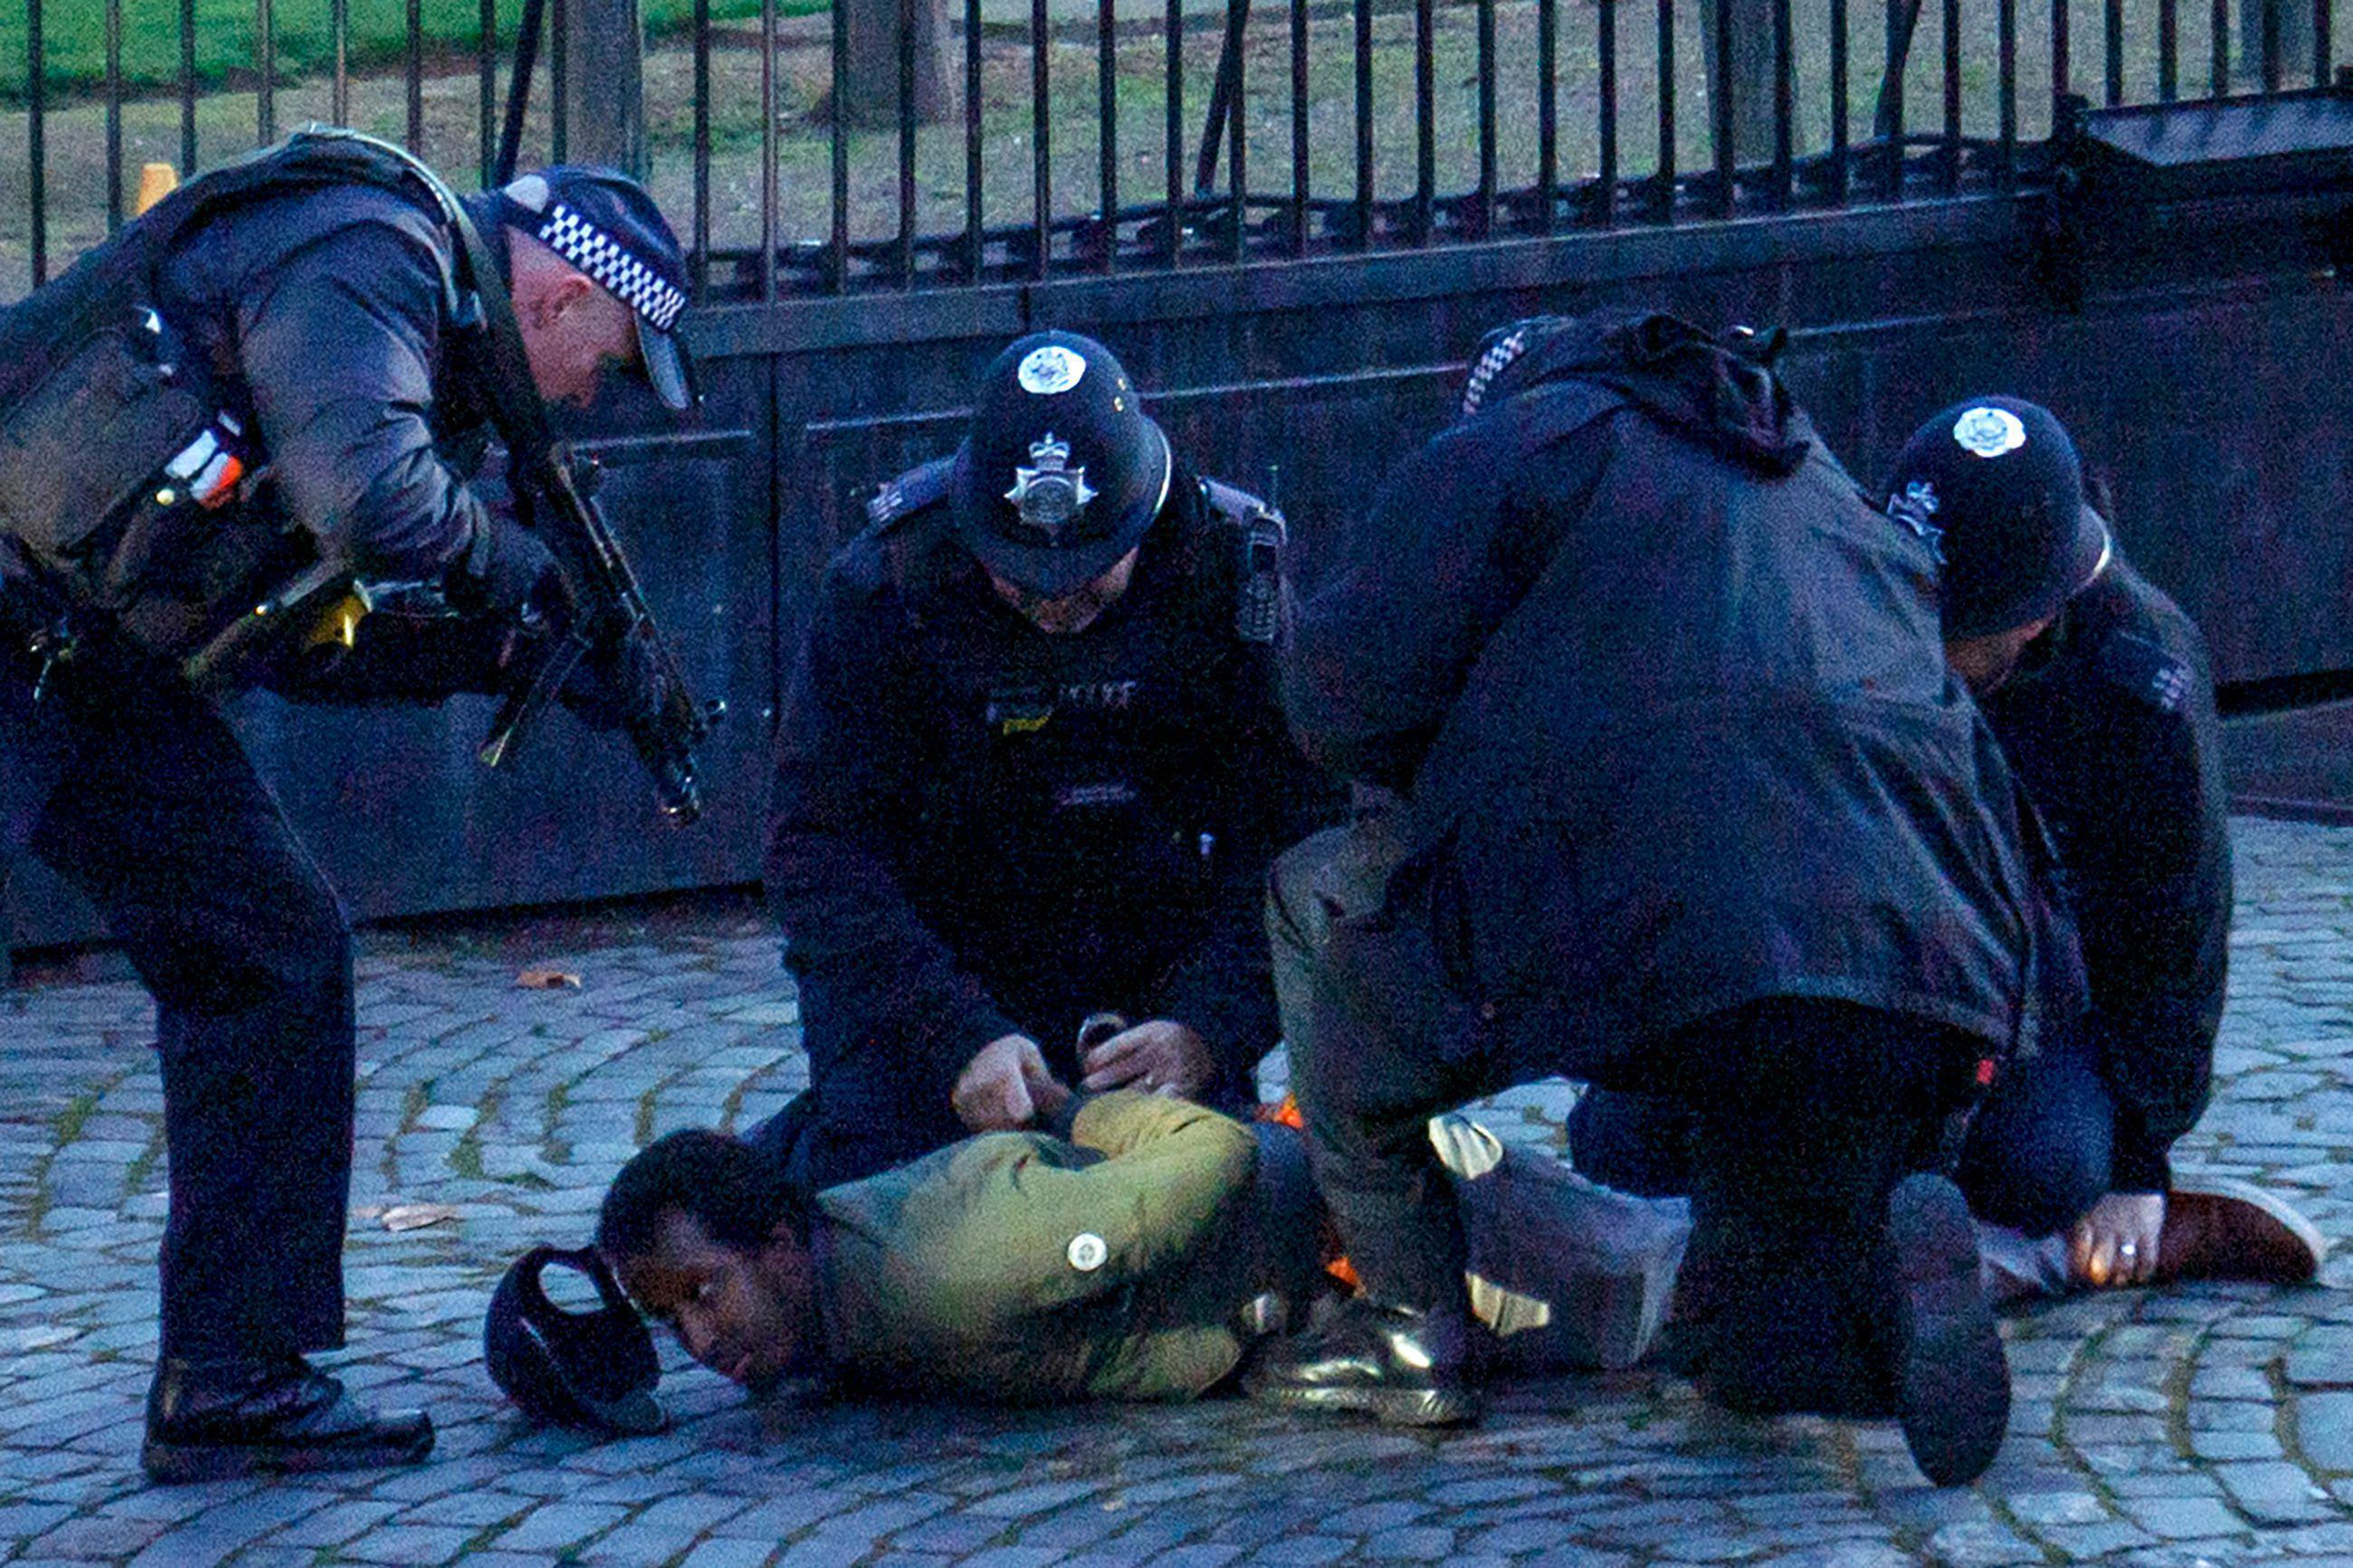 İngiliz polisi, bir şüpheliyi şok tabancasıyla durdurdu